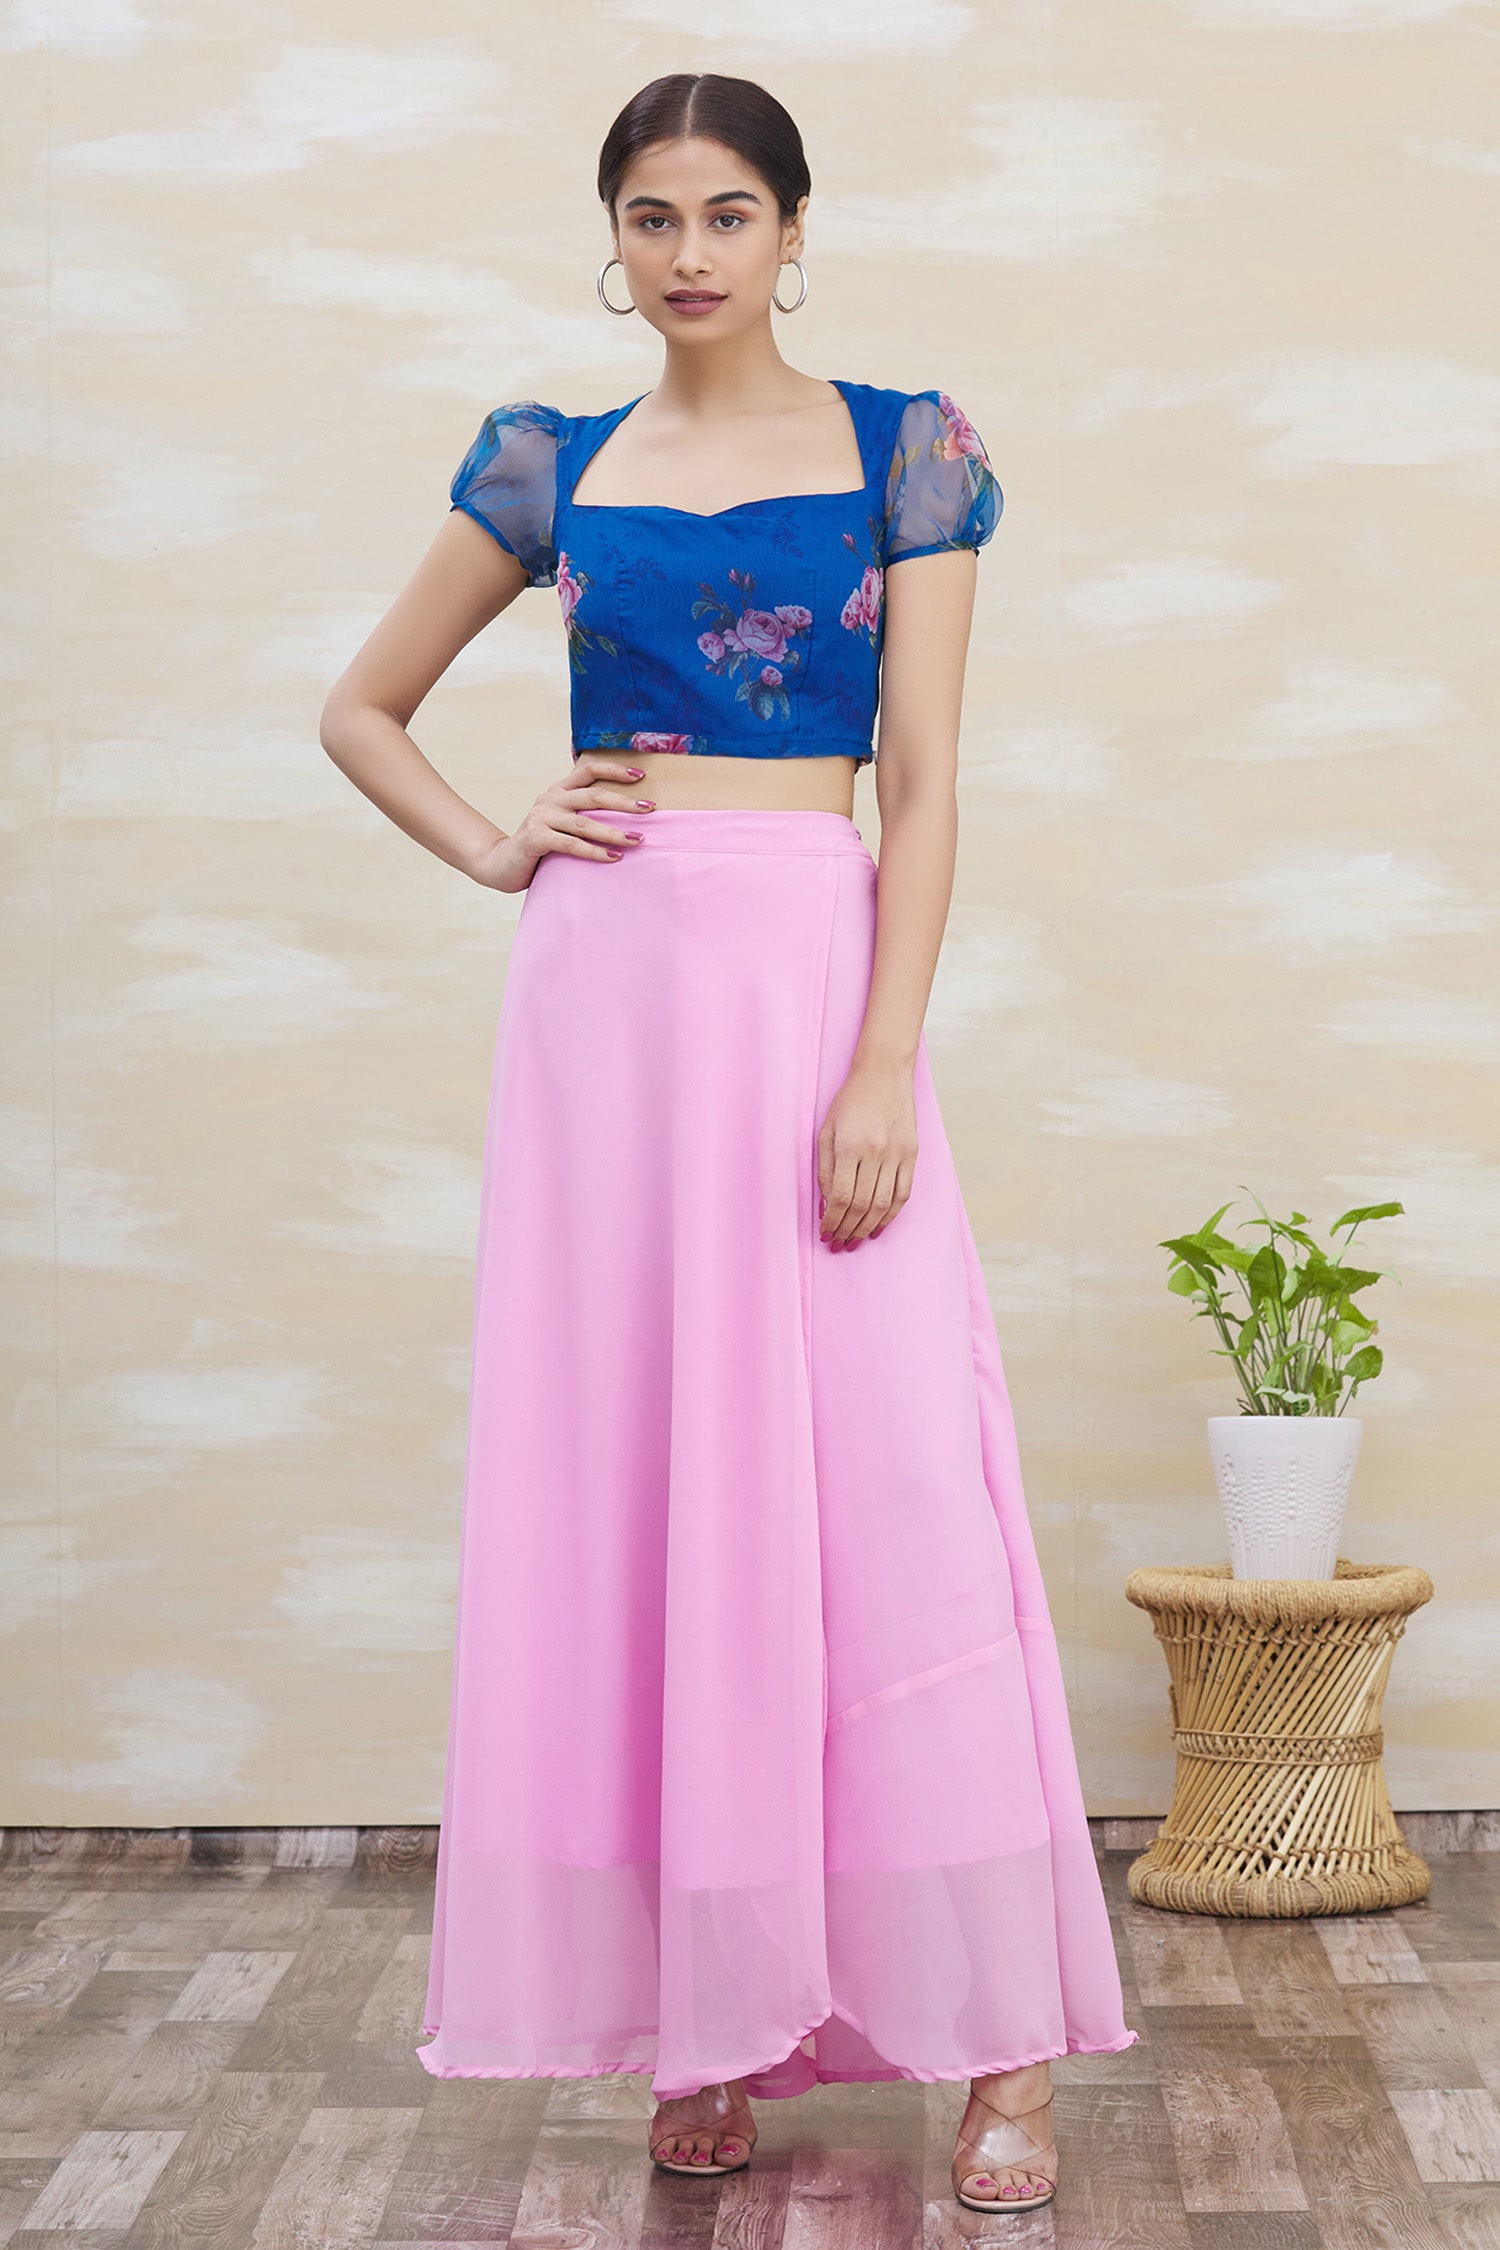 Samyukta Singhania Blue Top: Georgette Printed Sweetheart Neck Crop And Skirt Set For Women